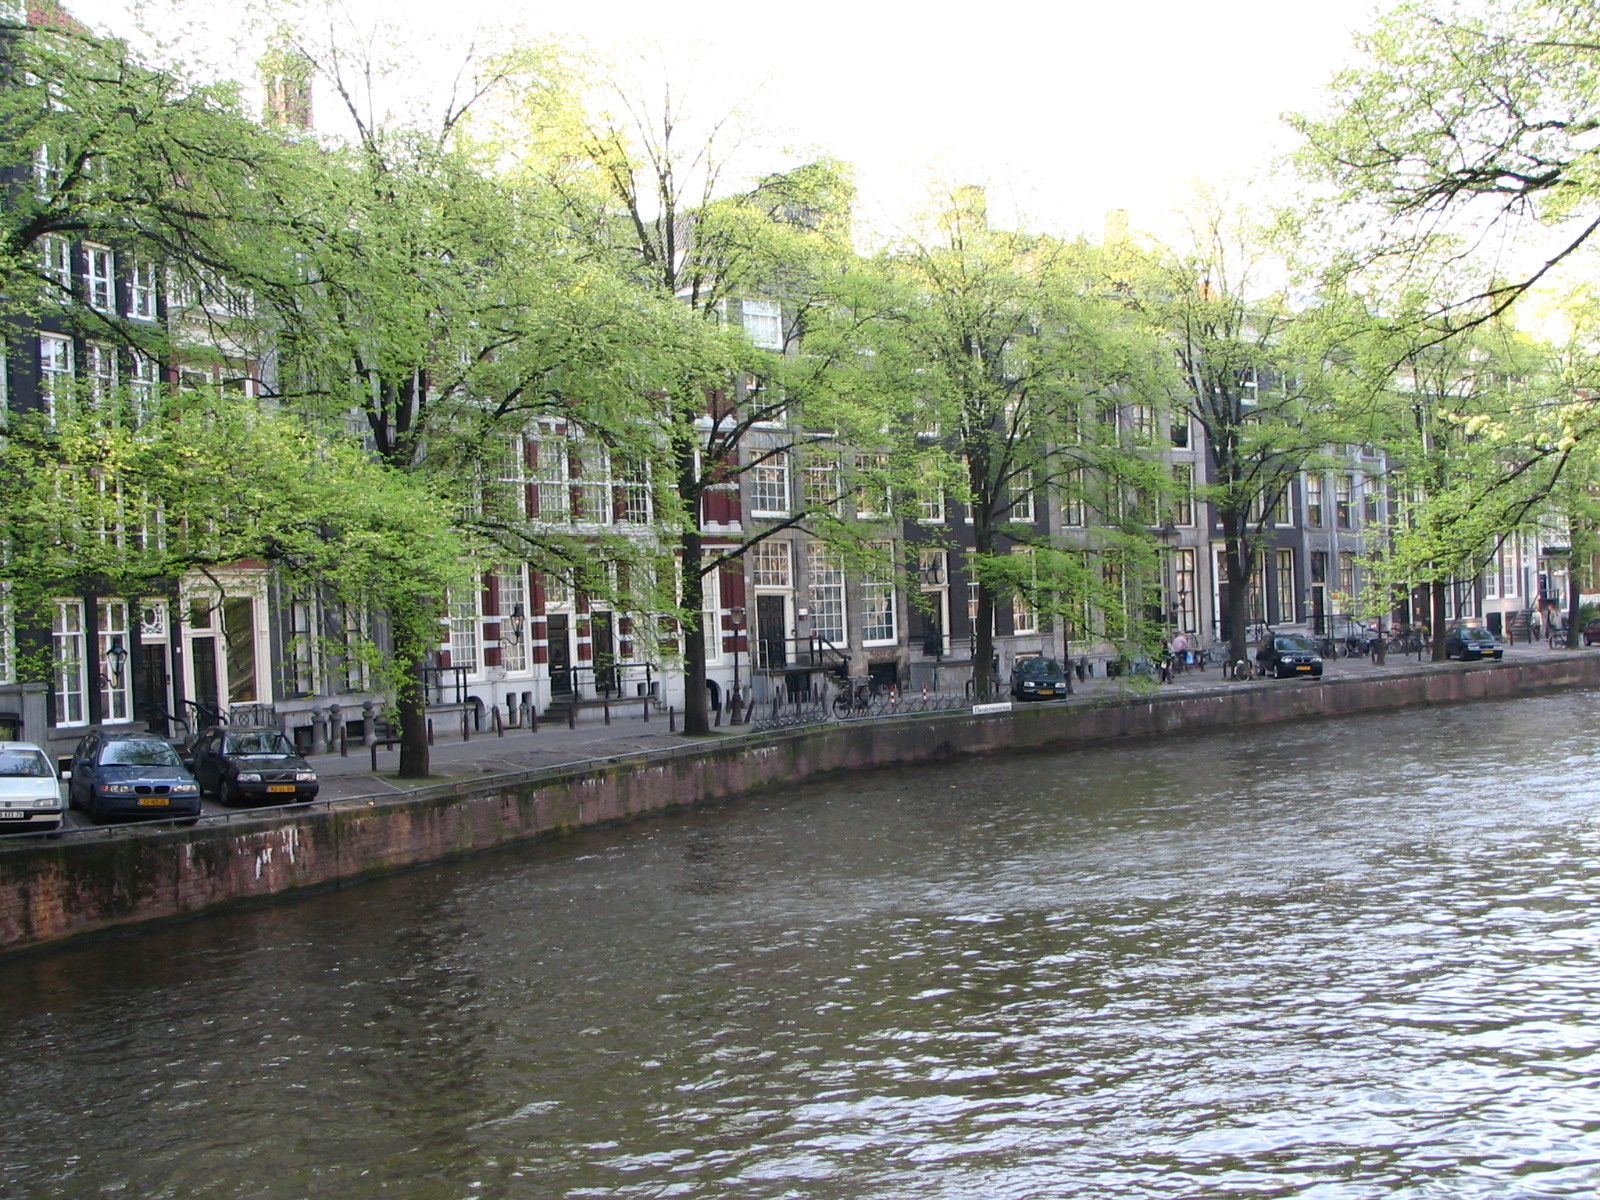 Der Artikel berichtet über eine mögliche Amsterdamreise. 